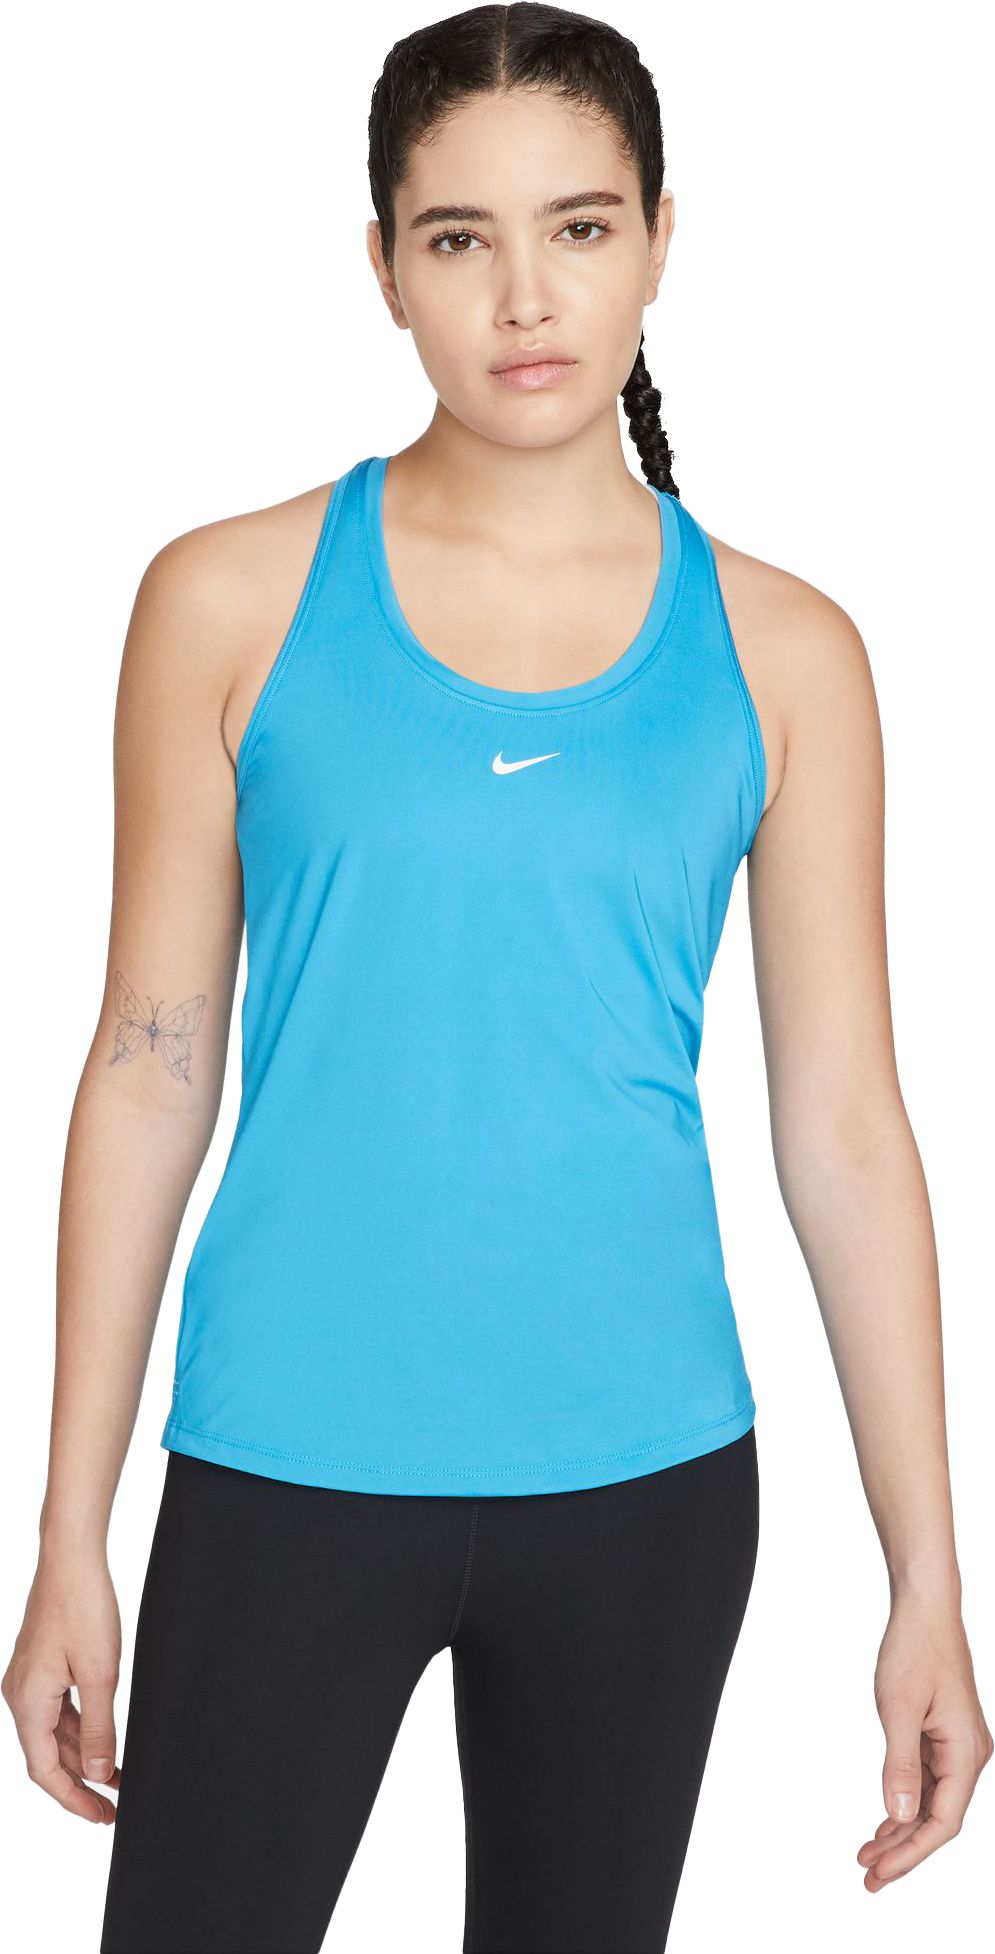 NIKE, Nike Dri-FIT One Women's Slim Fit T